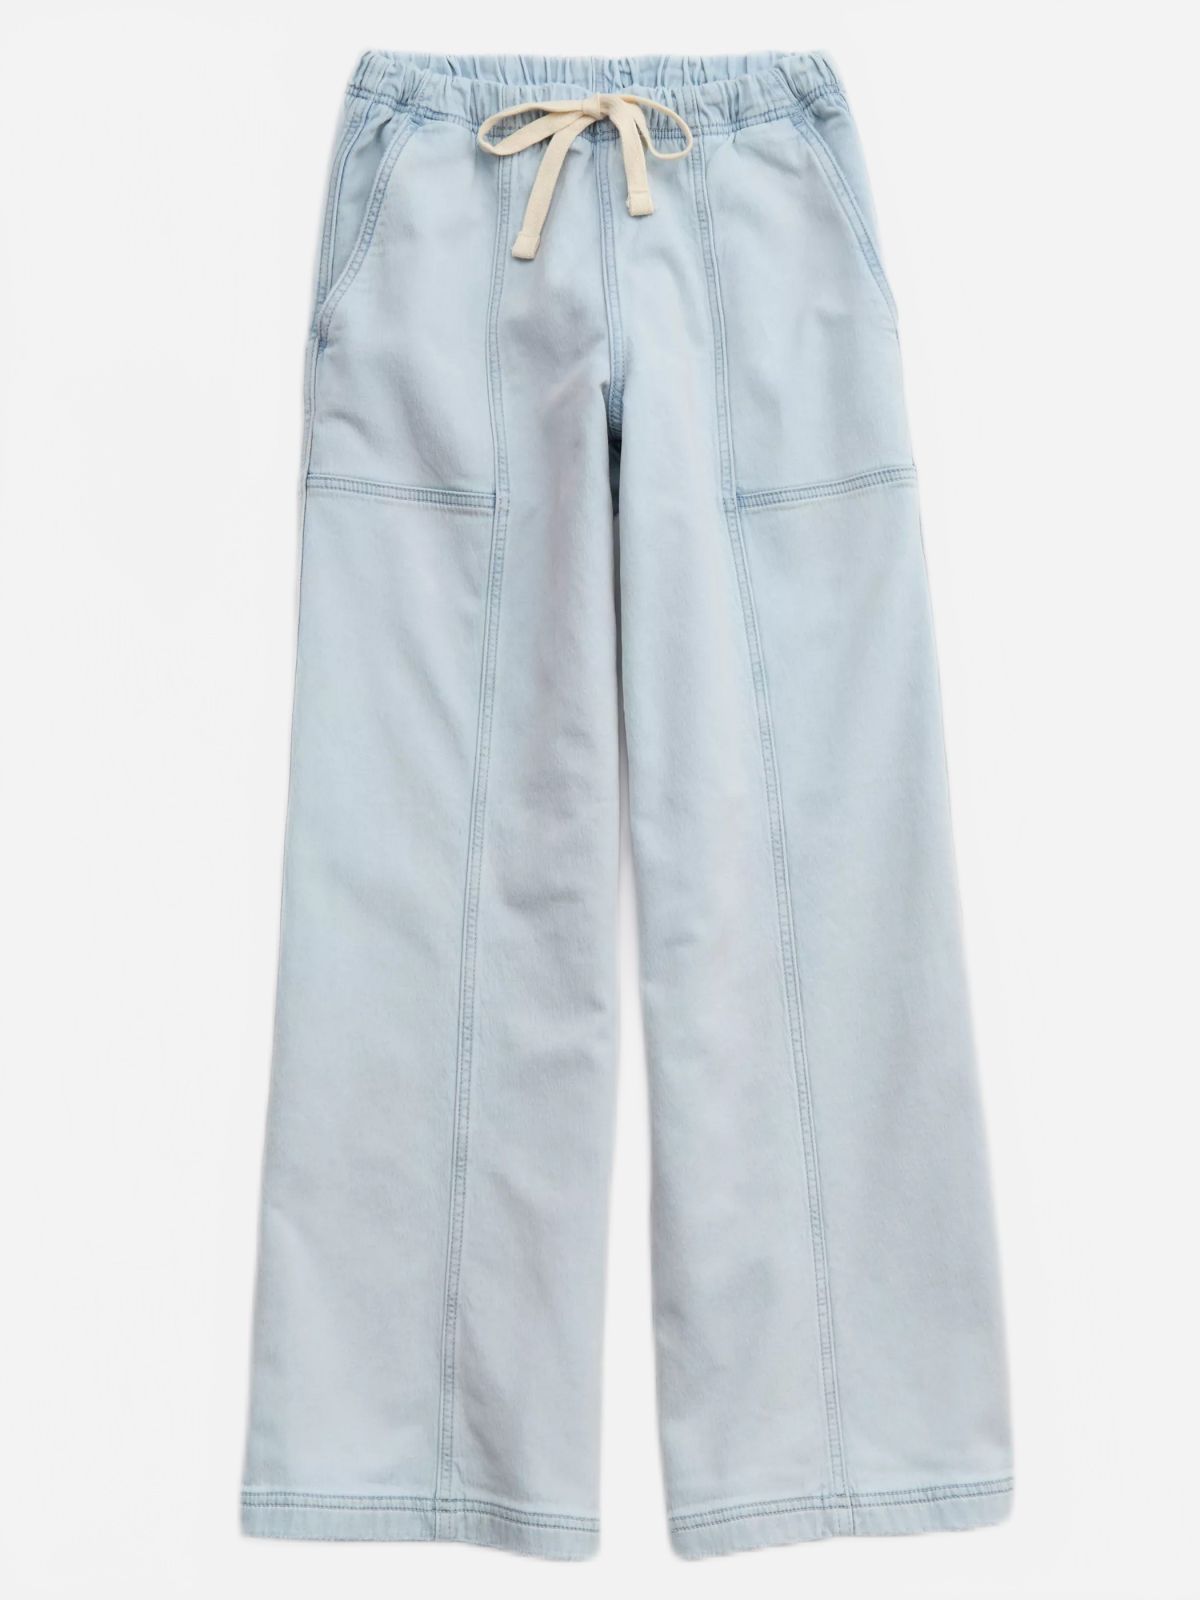  מכנסיים ארוכים ווש ג'ינס של AERIE